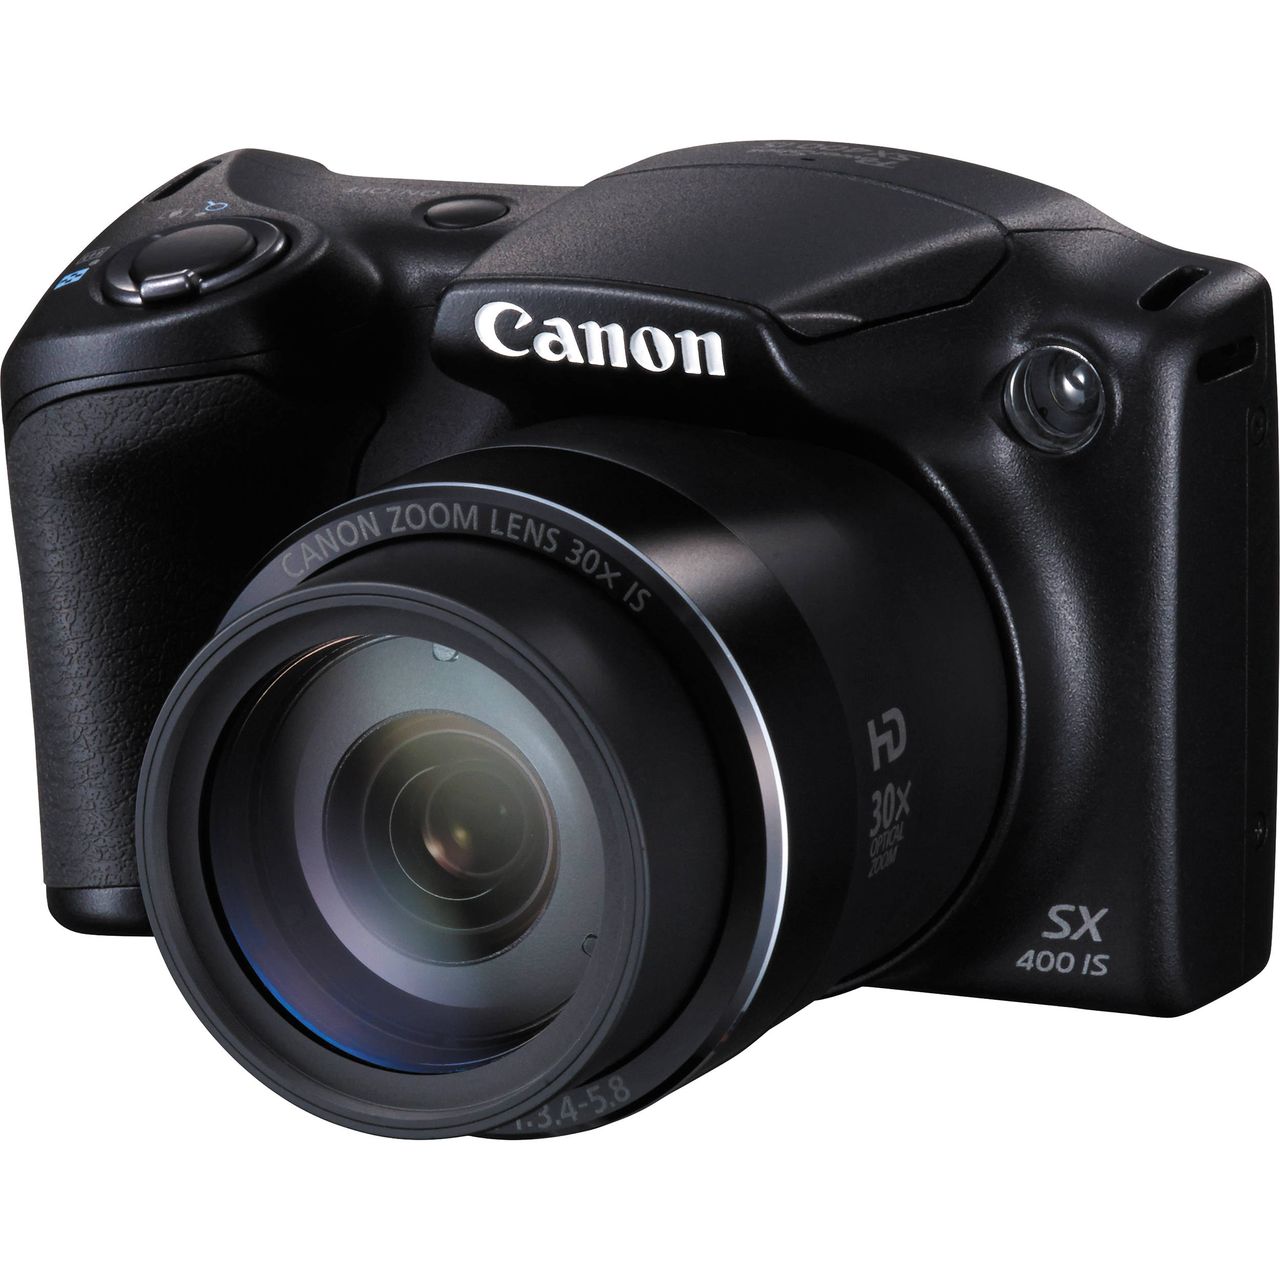 Canon PowerShot SX400 IS wspiera system stabilizacji obrazu